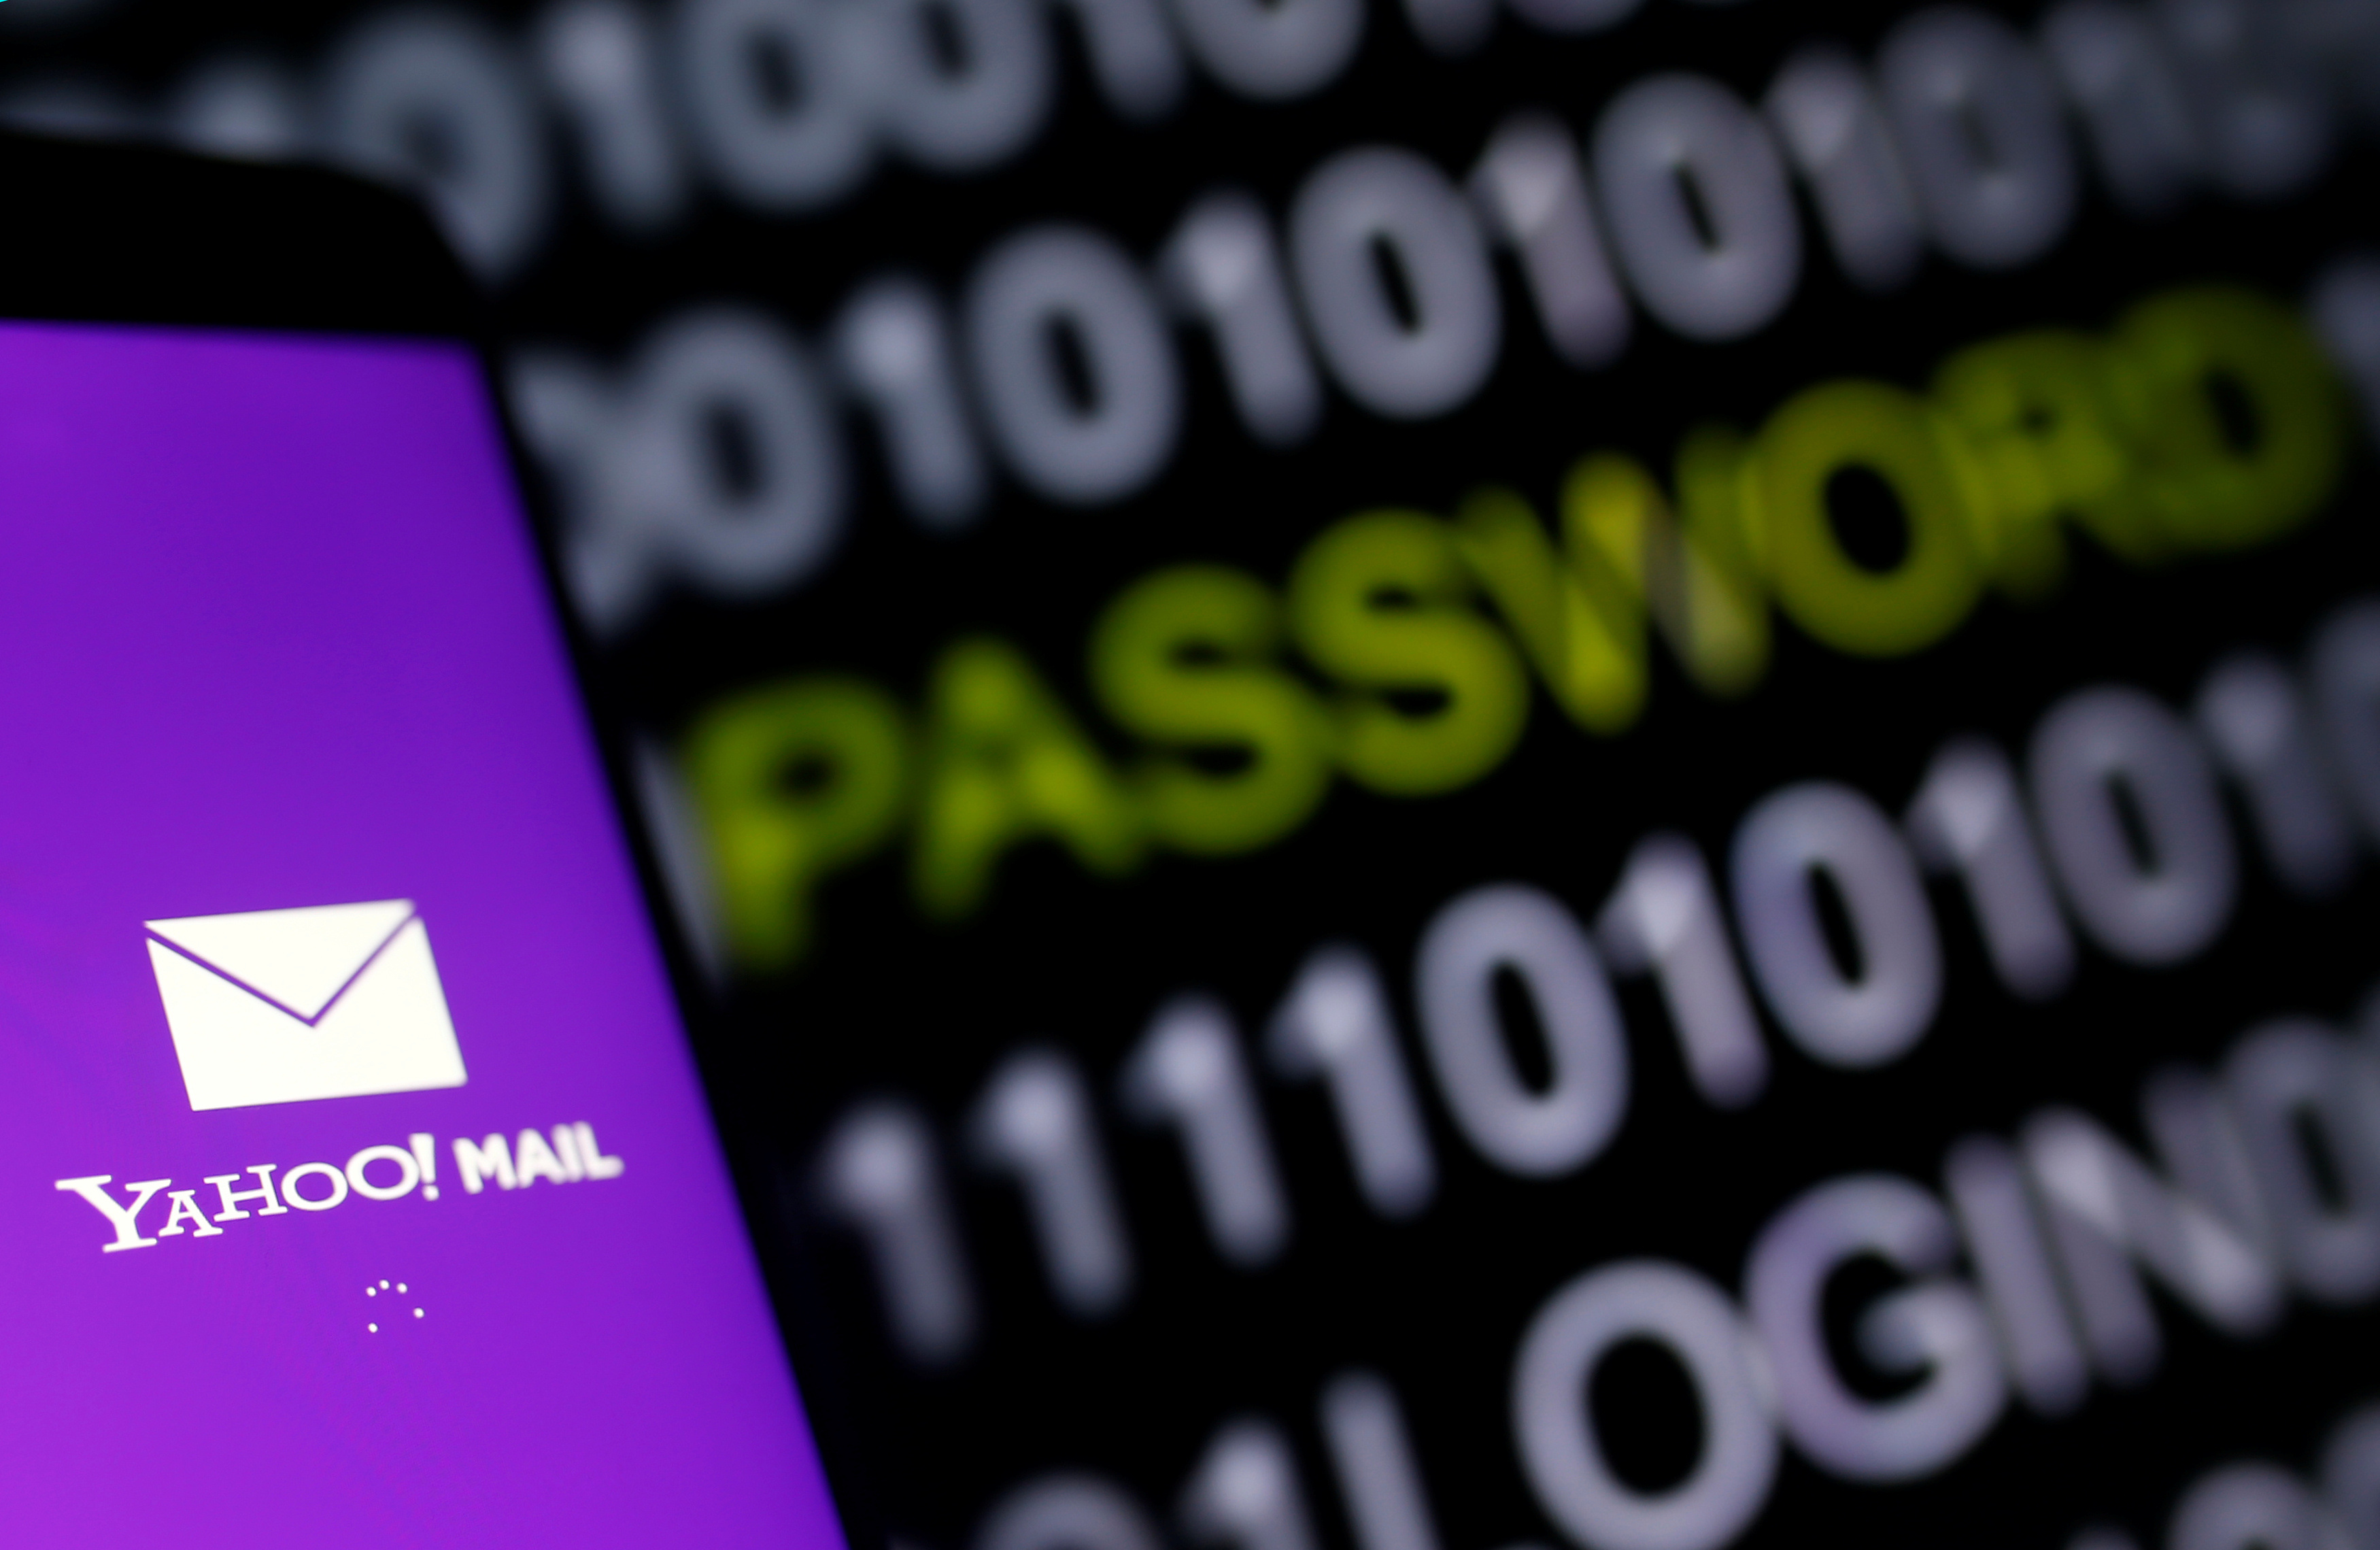 El logotipo de Yahoo Mail aparece en la pantalla de un teléfono inteligente frente a un código en esta ilustración